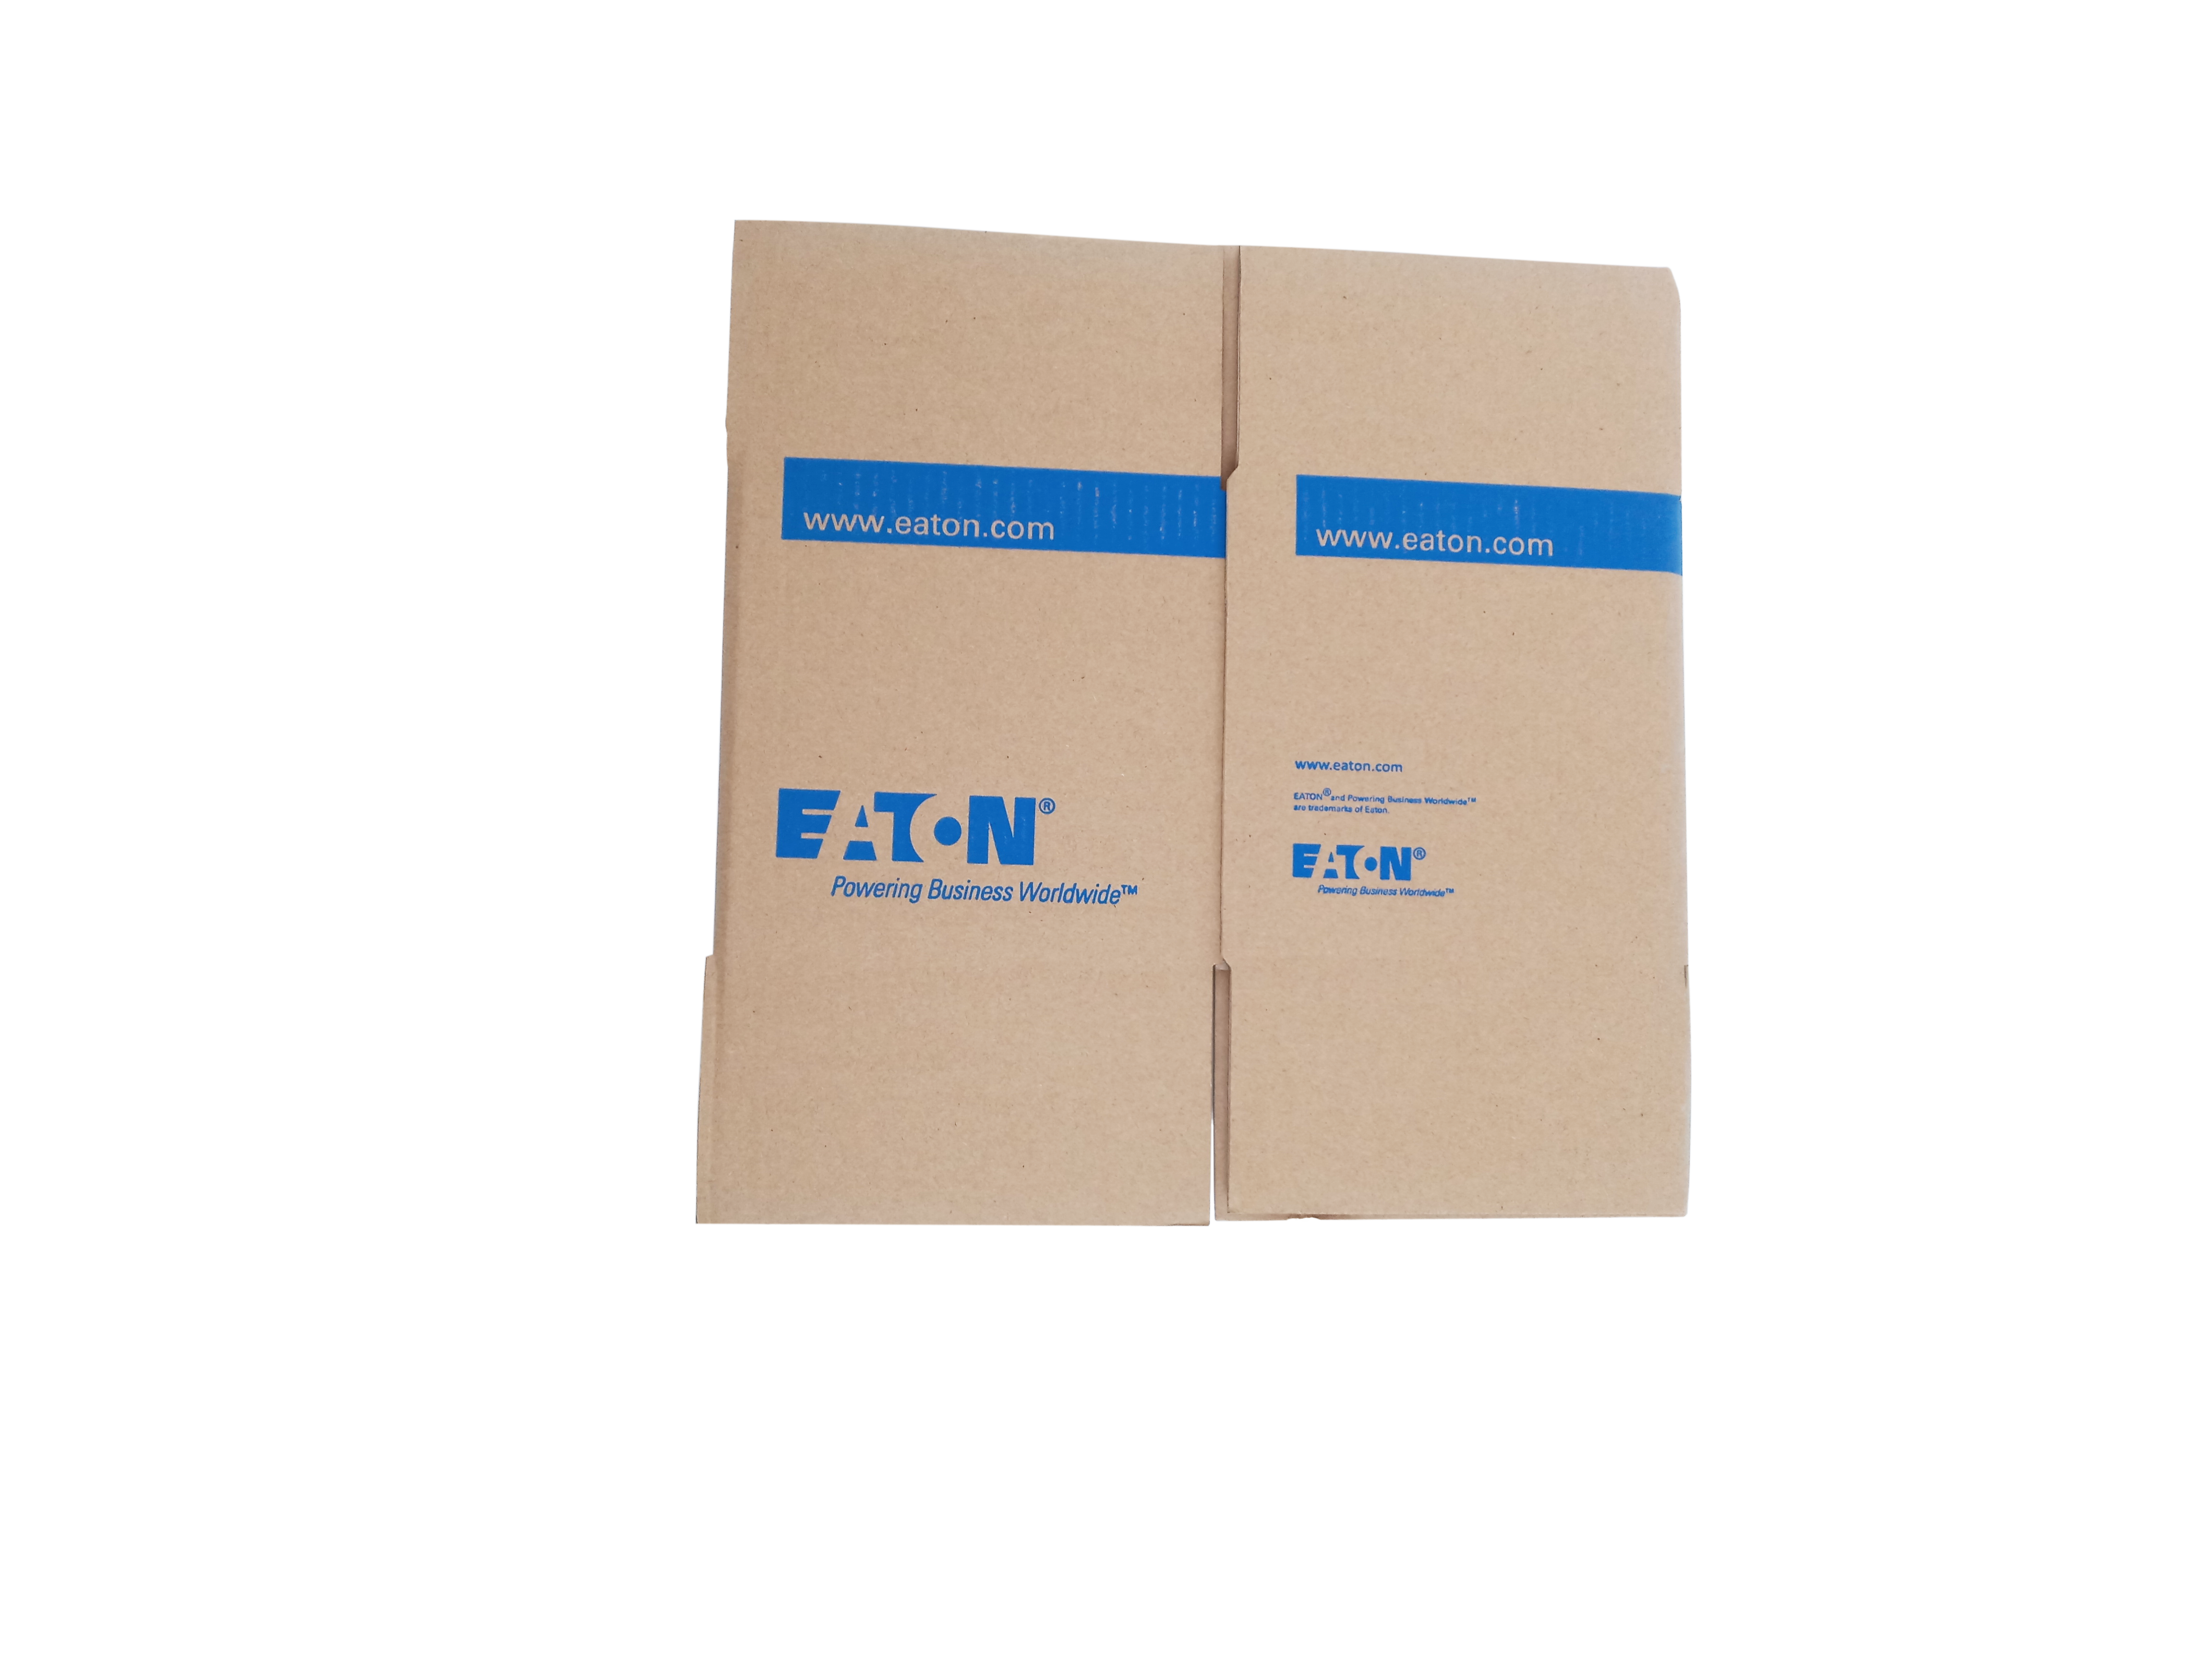 智宏通纸箱生产厂家,提供一站式纸箱订制和纸箱供应的采购平台 普通瓦楞纸箱